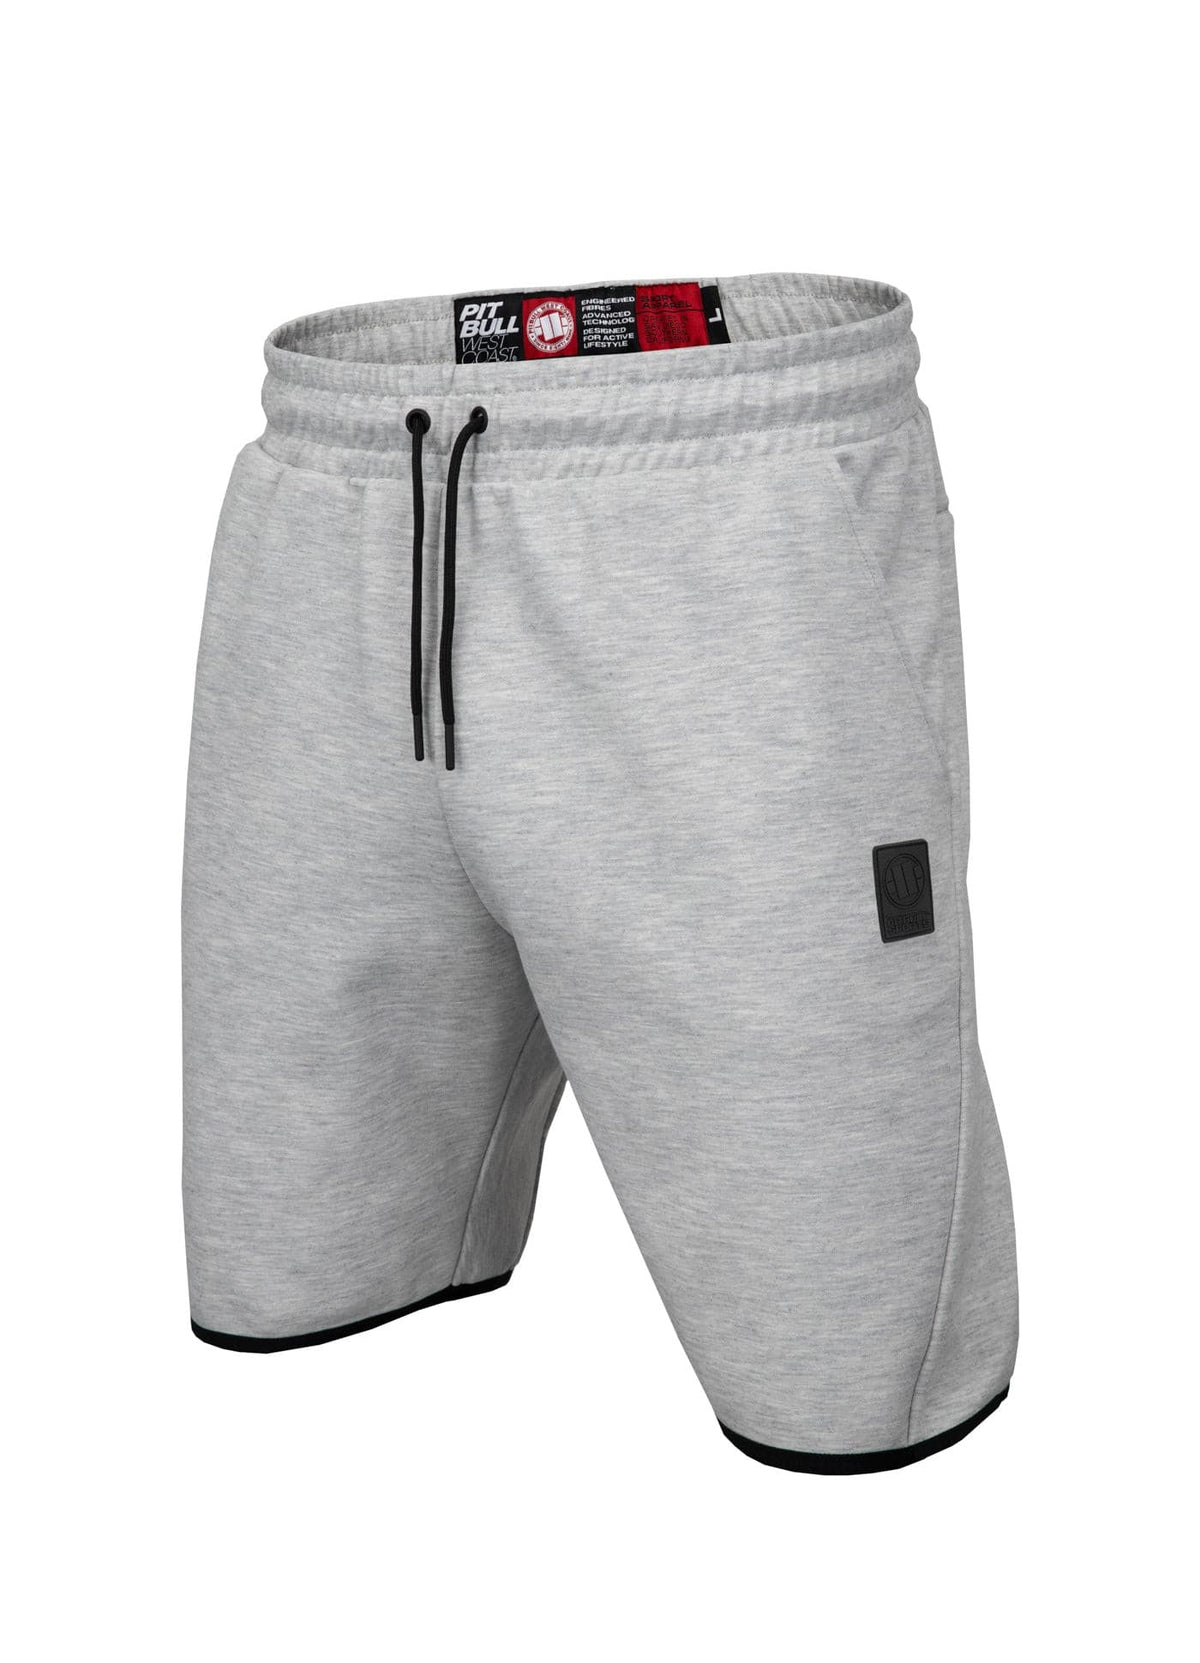 ALCORN Grey Shorts.